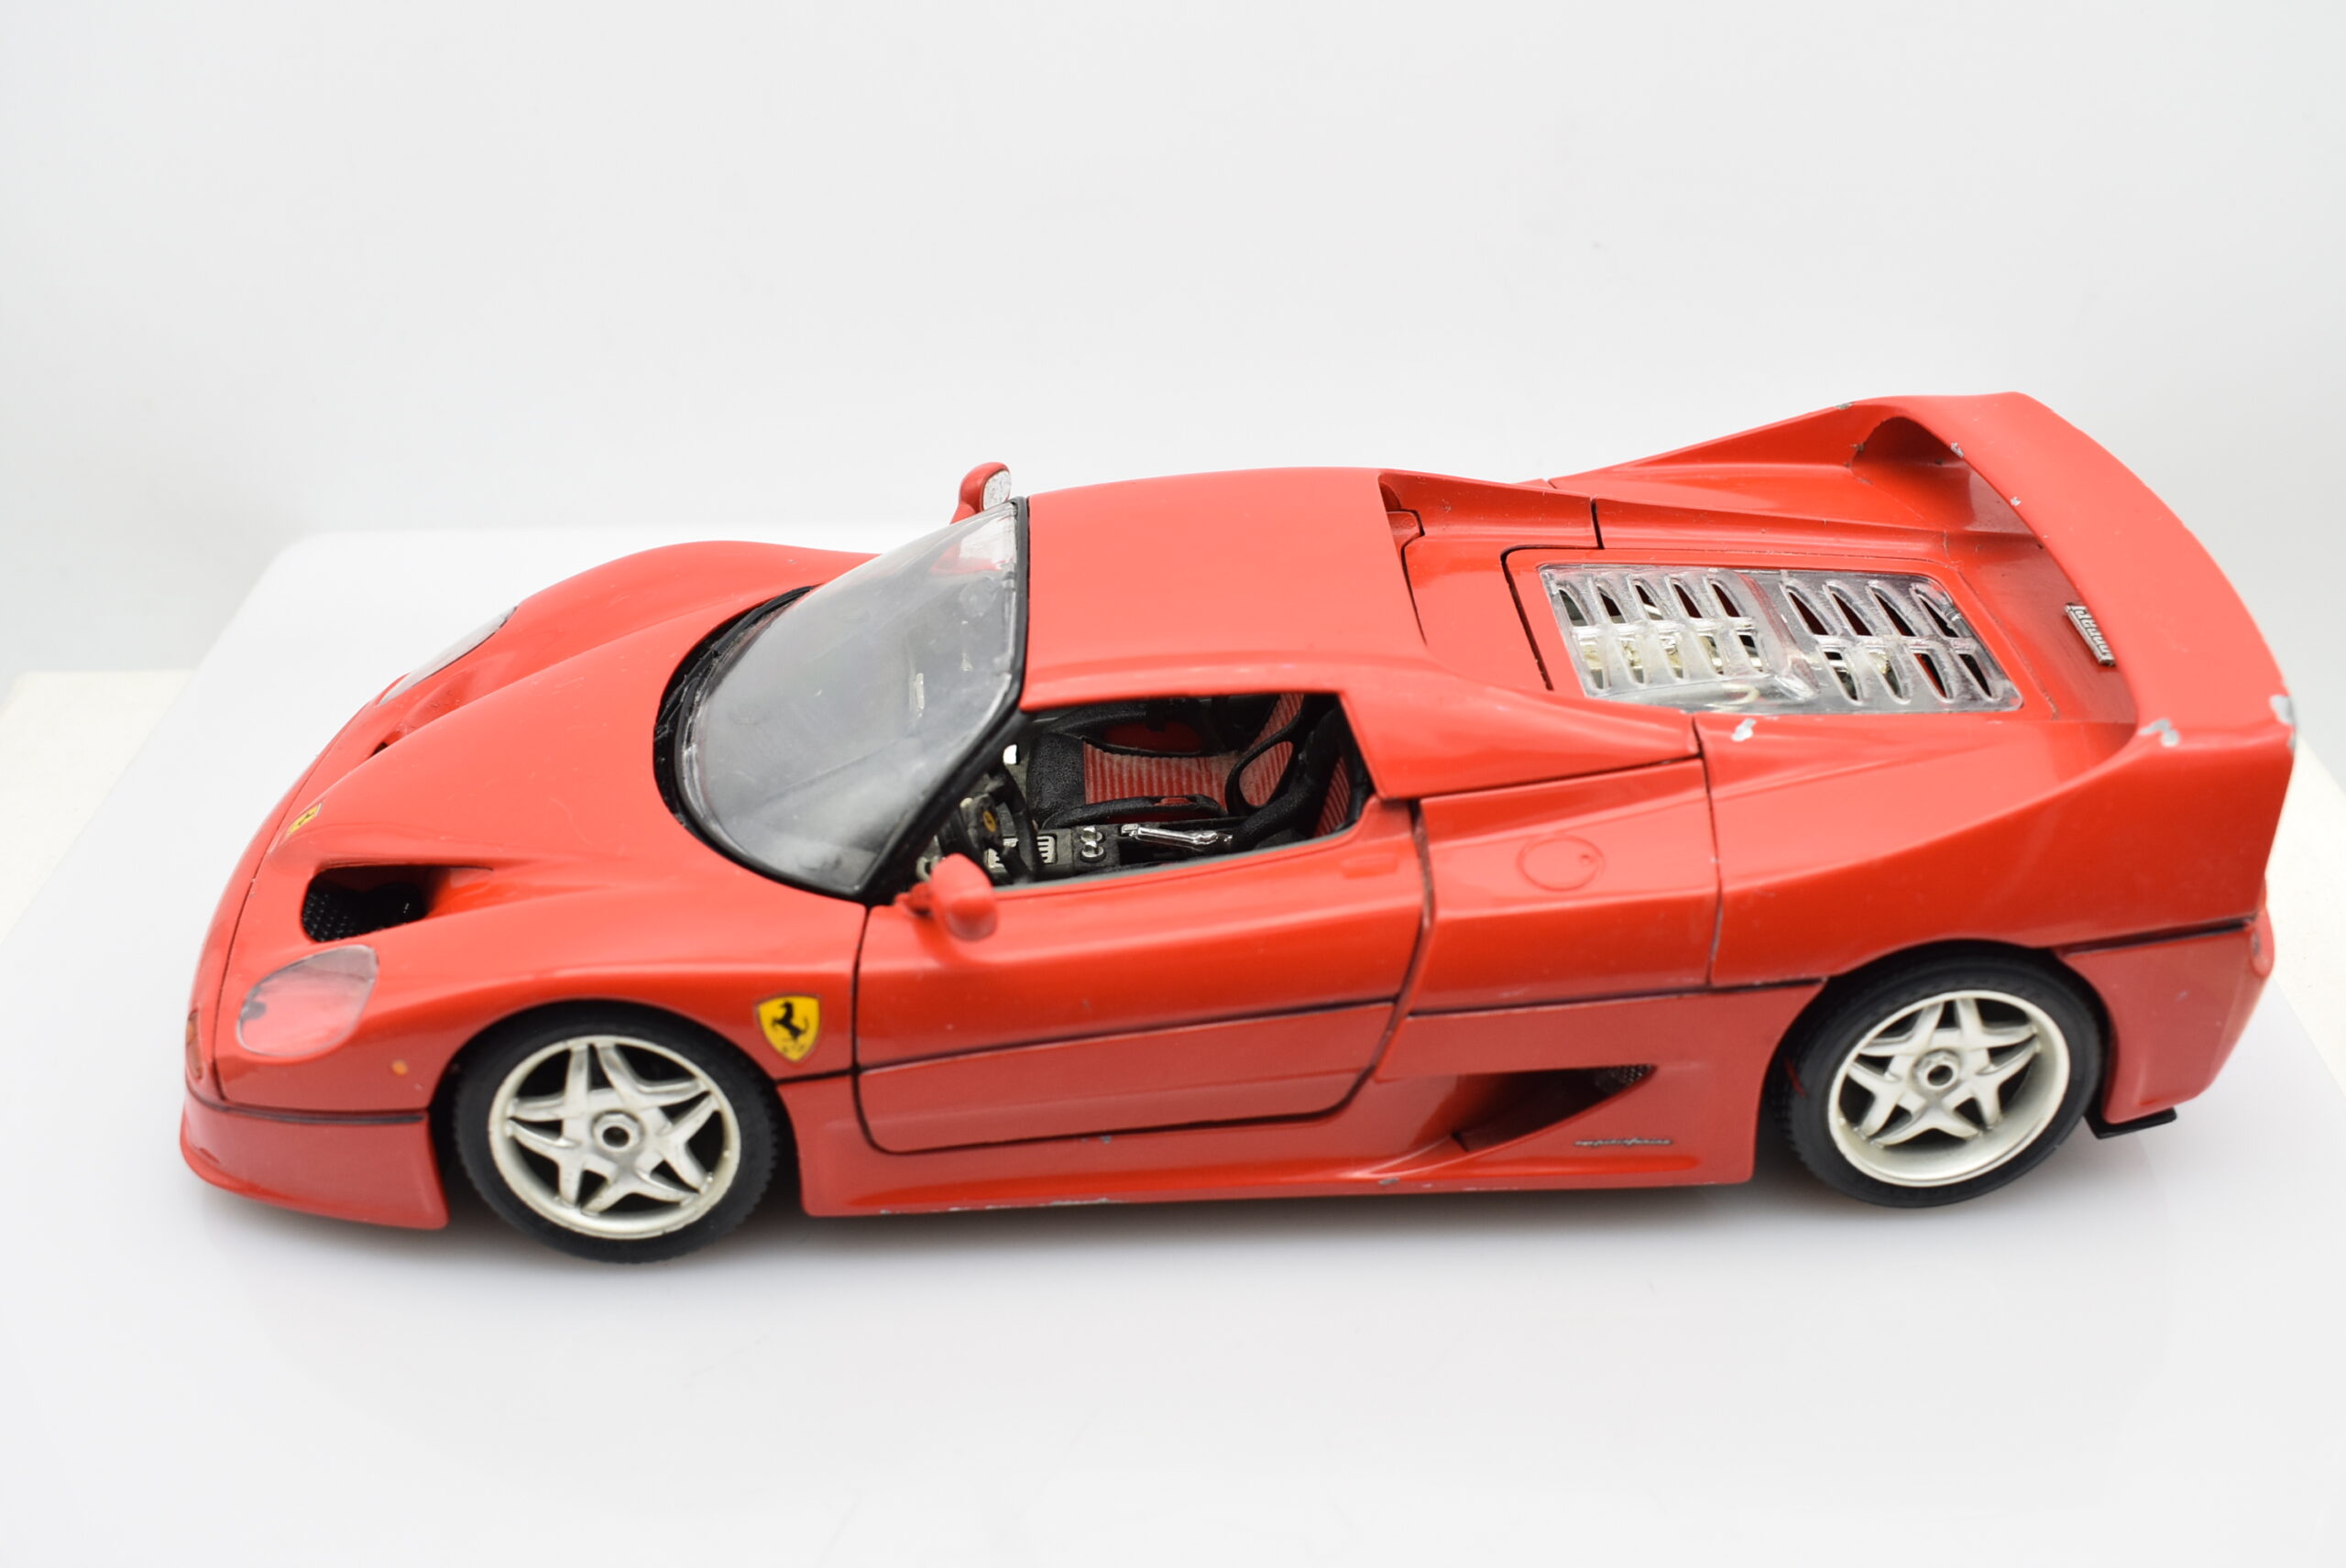 Modellino auto scala 1:18 Ferrari F50 Burago diecast modellismo collezione